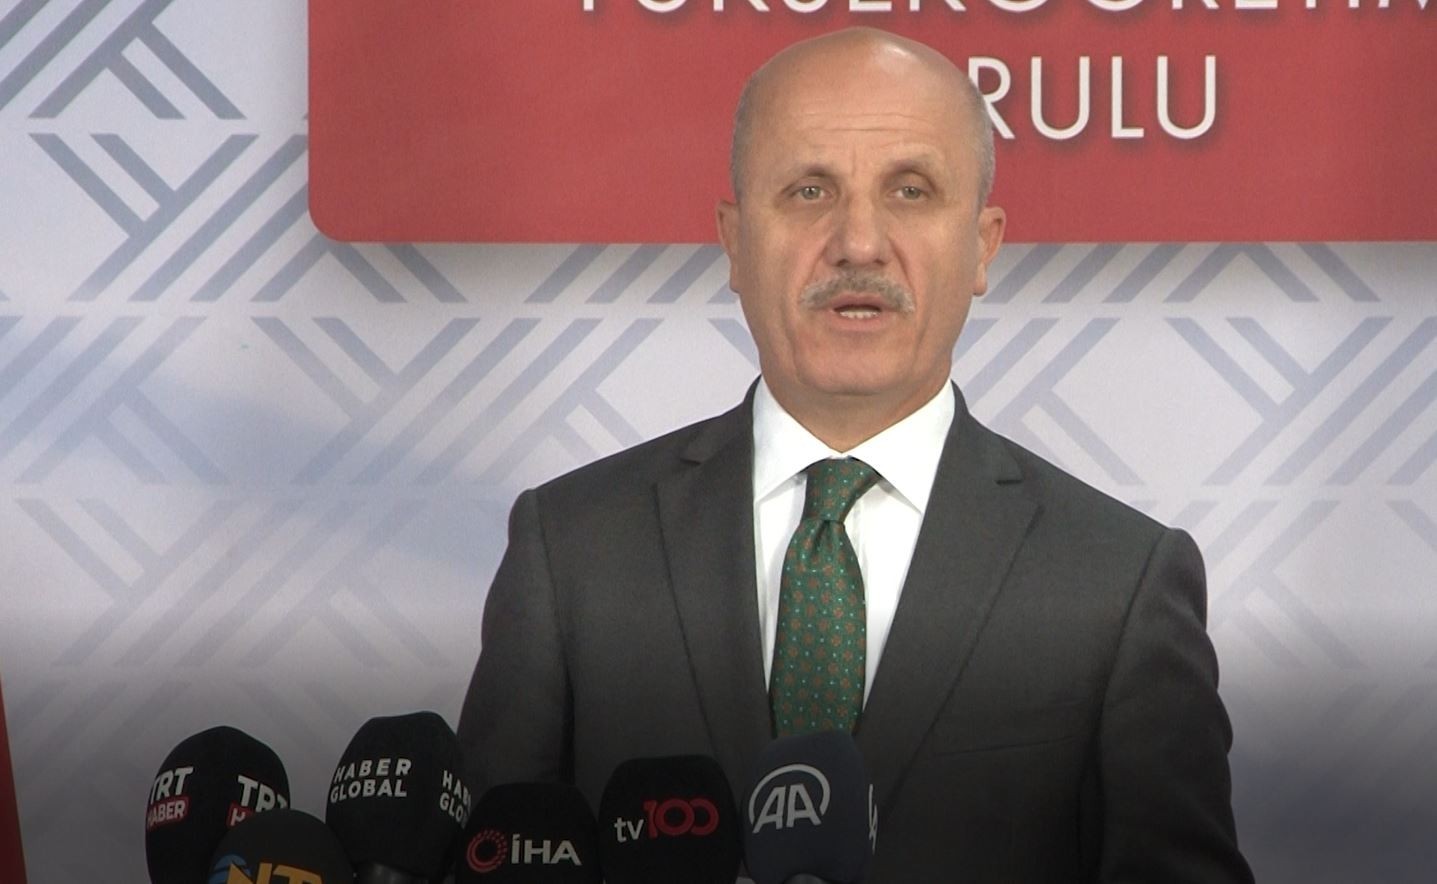 YÖK Başkanı Özvar: "YÖK incelemeleri tamamlamış olup, genel kurulumuzda inceleme neticesi sonucu paylaşılacaktır"